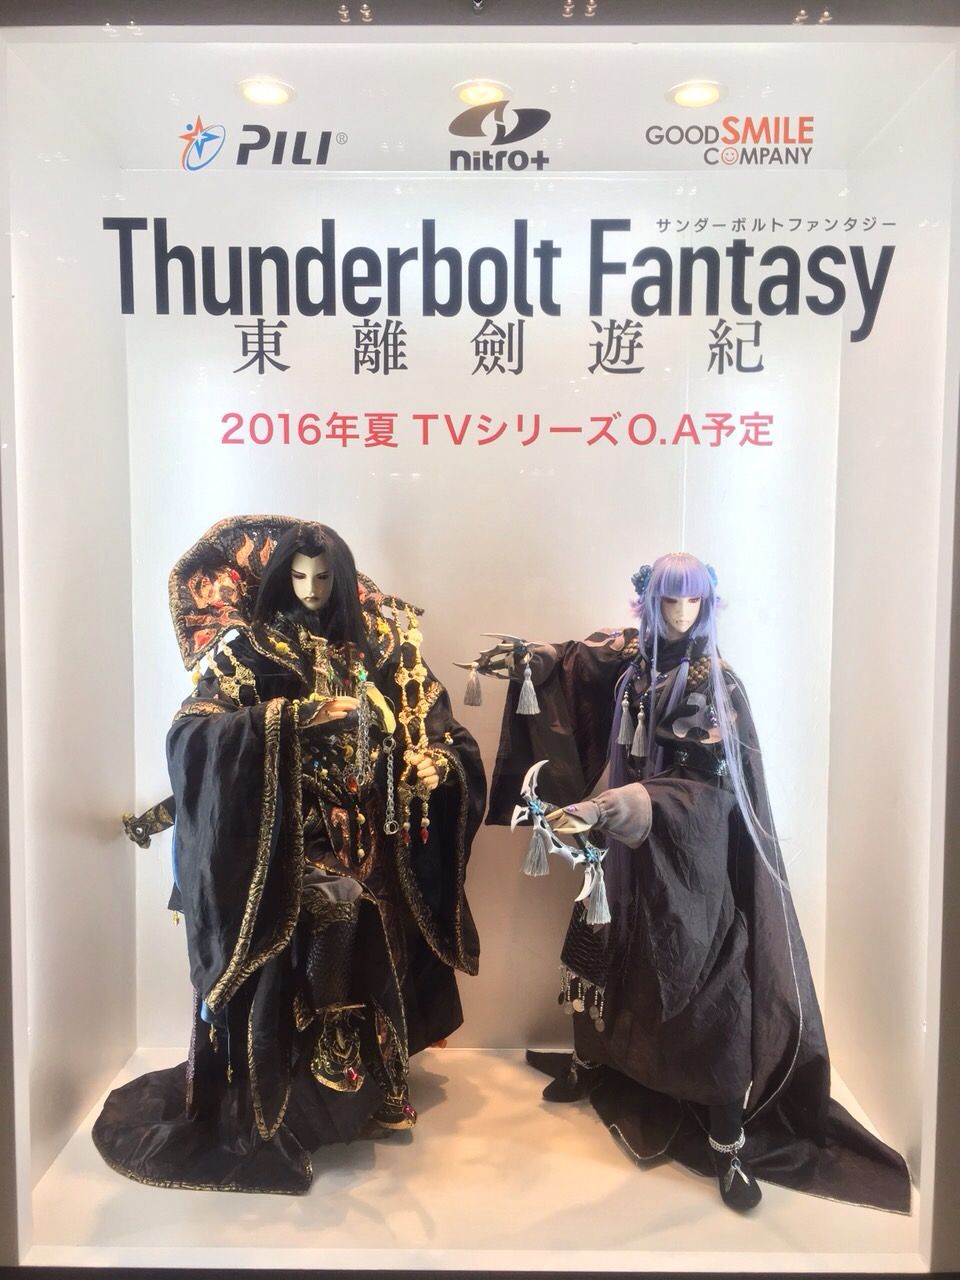 関智一 ワンダーフェスティバル16 Thunderbolt Fantasy 東離劍遊紀 ステージ サルの足跡 アトミックモンキーブログ